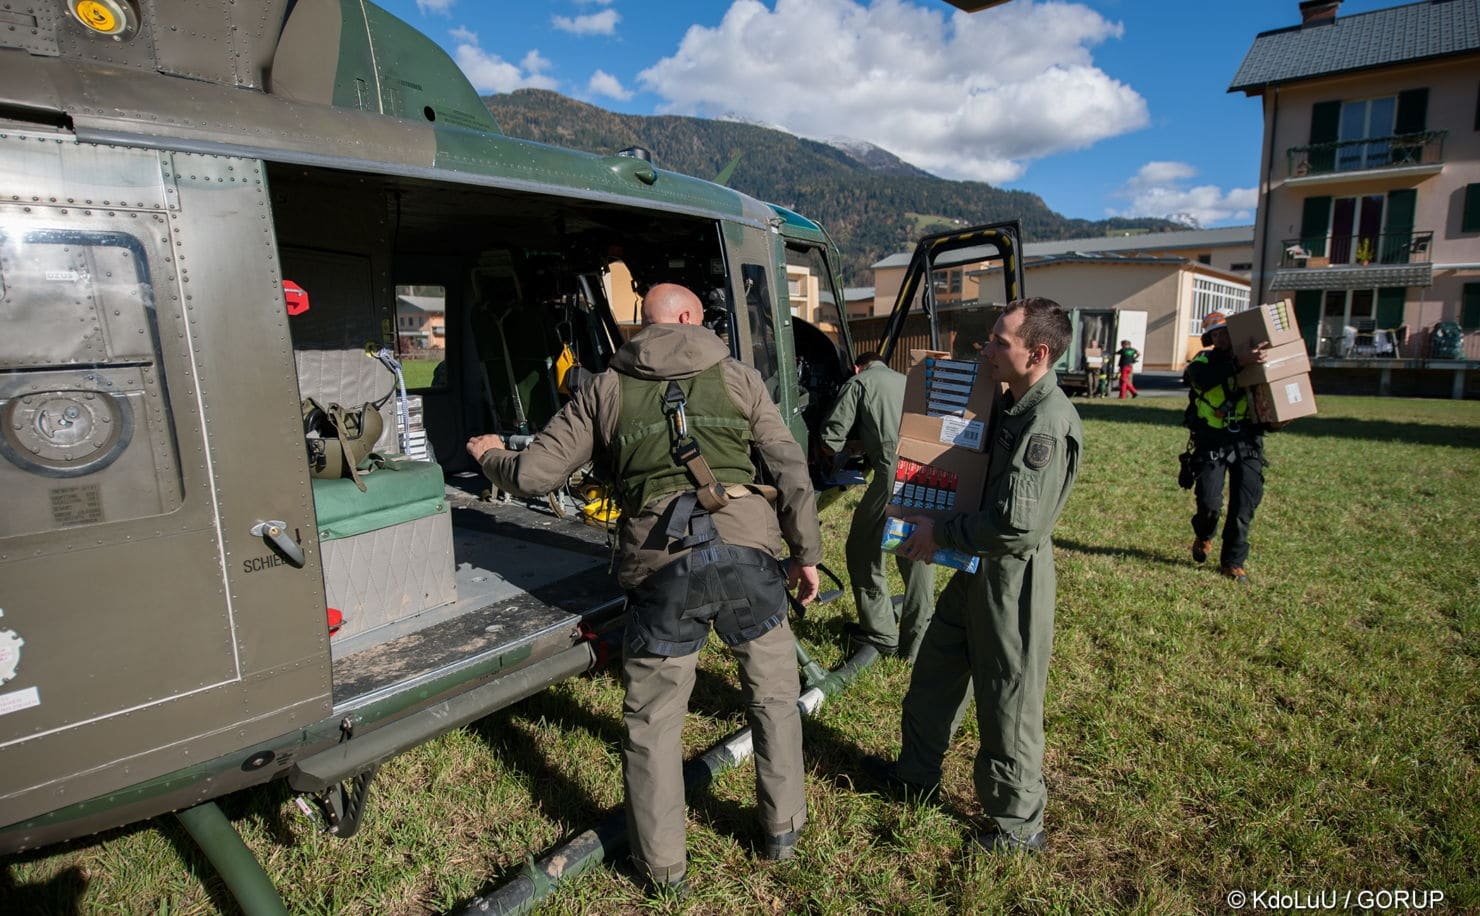 Lebensmitteltransport mit einer Agusta Bell 212 für die eingeschlossene Lesachtaler Bevölkerung.